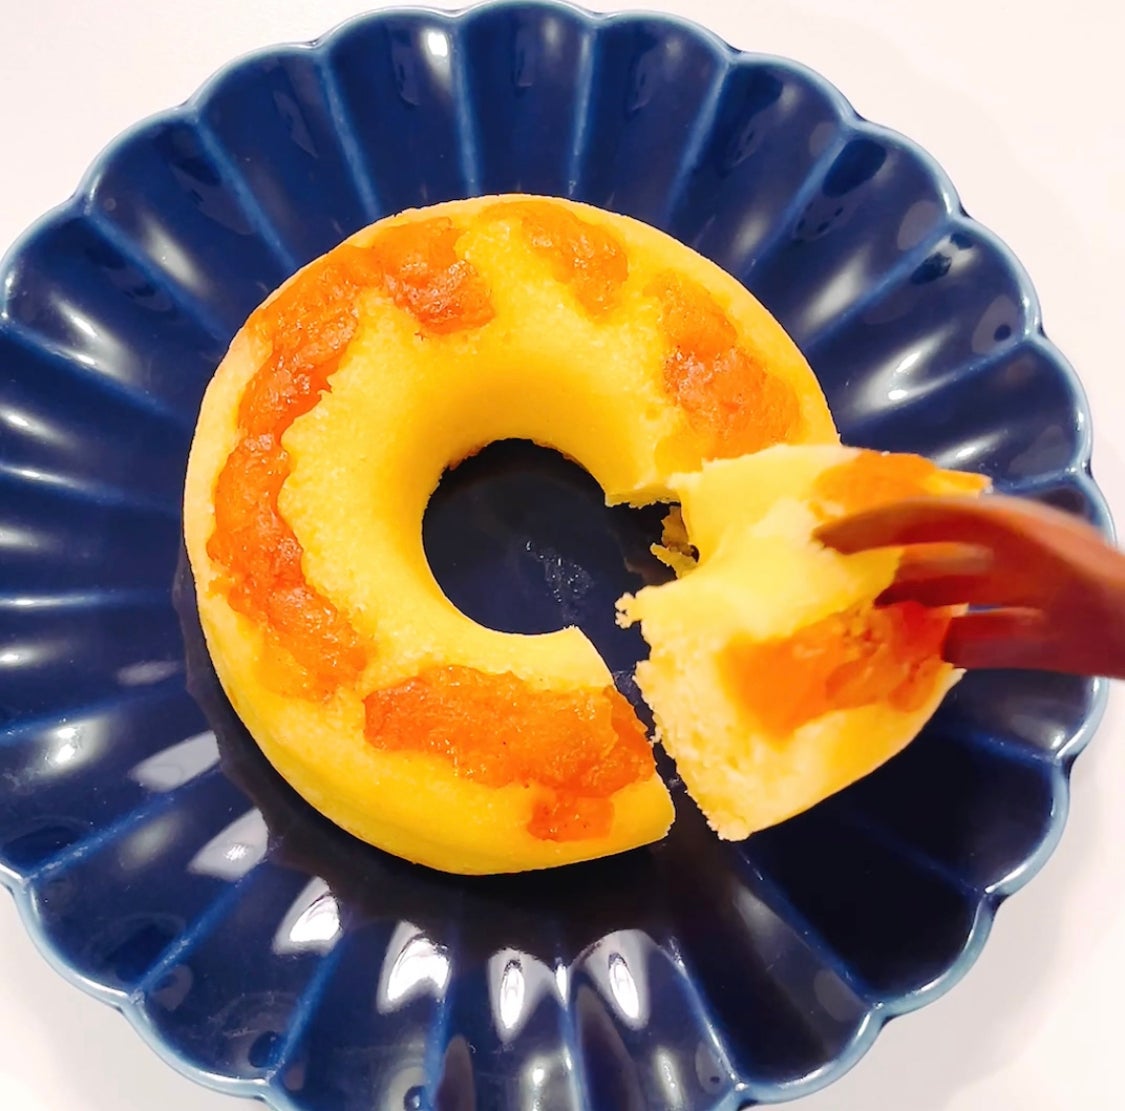 KALDI（カルディ）のおすすめスイーツ「北海道焼きドーナツ（焼きりんご）」